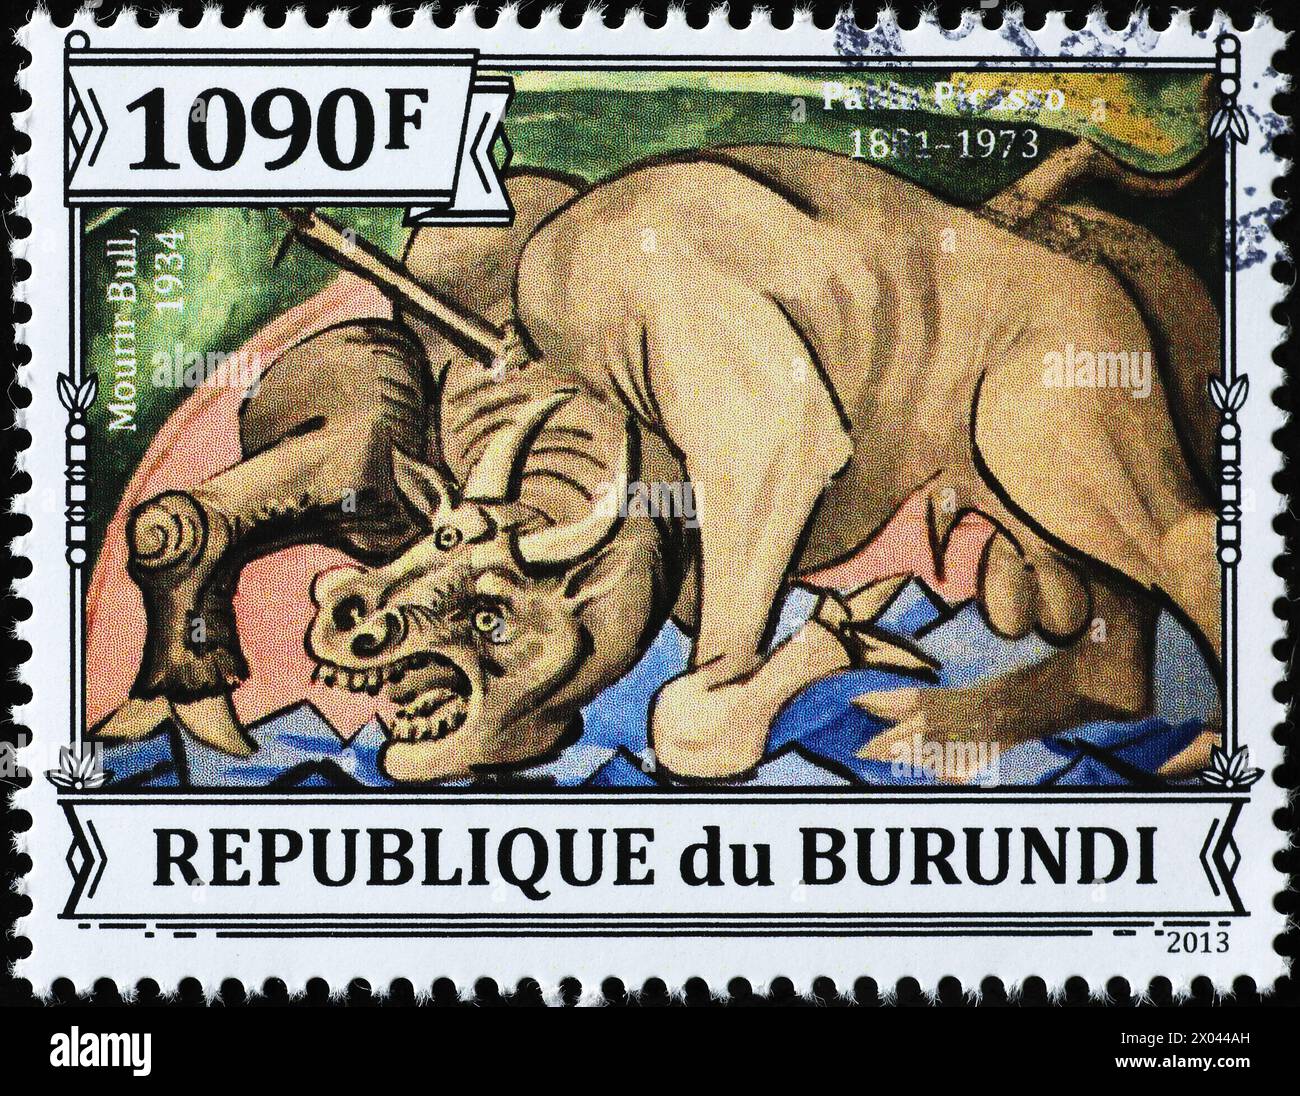 "Sterbender Bulle" von Pablo Picasso auf Briefmarke Stockfoto